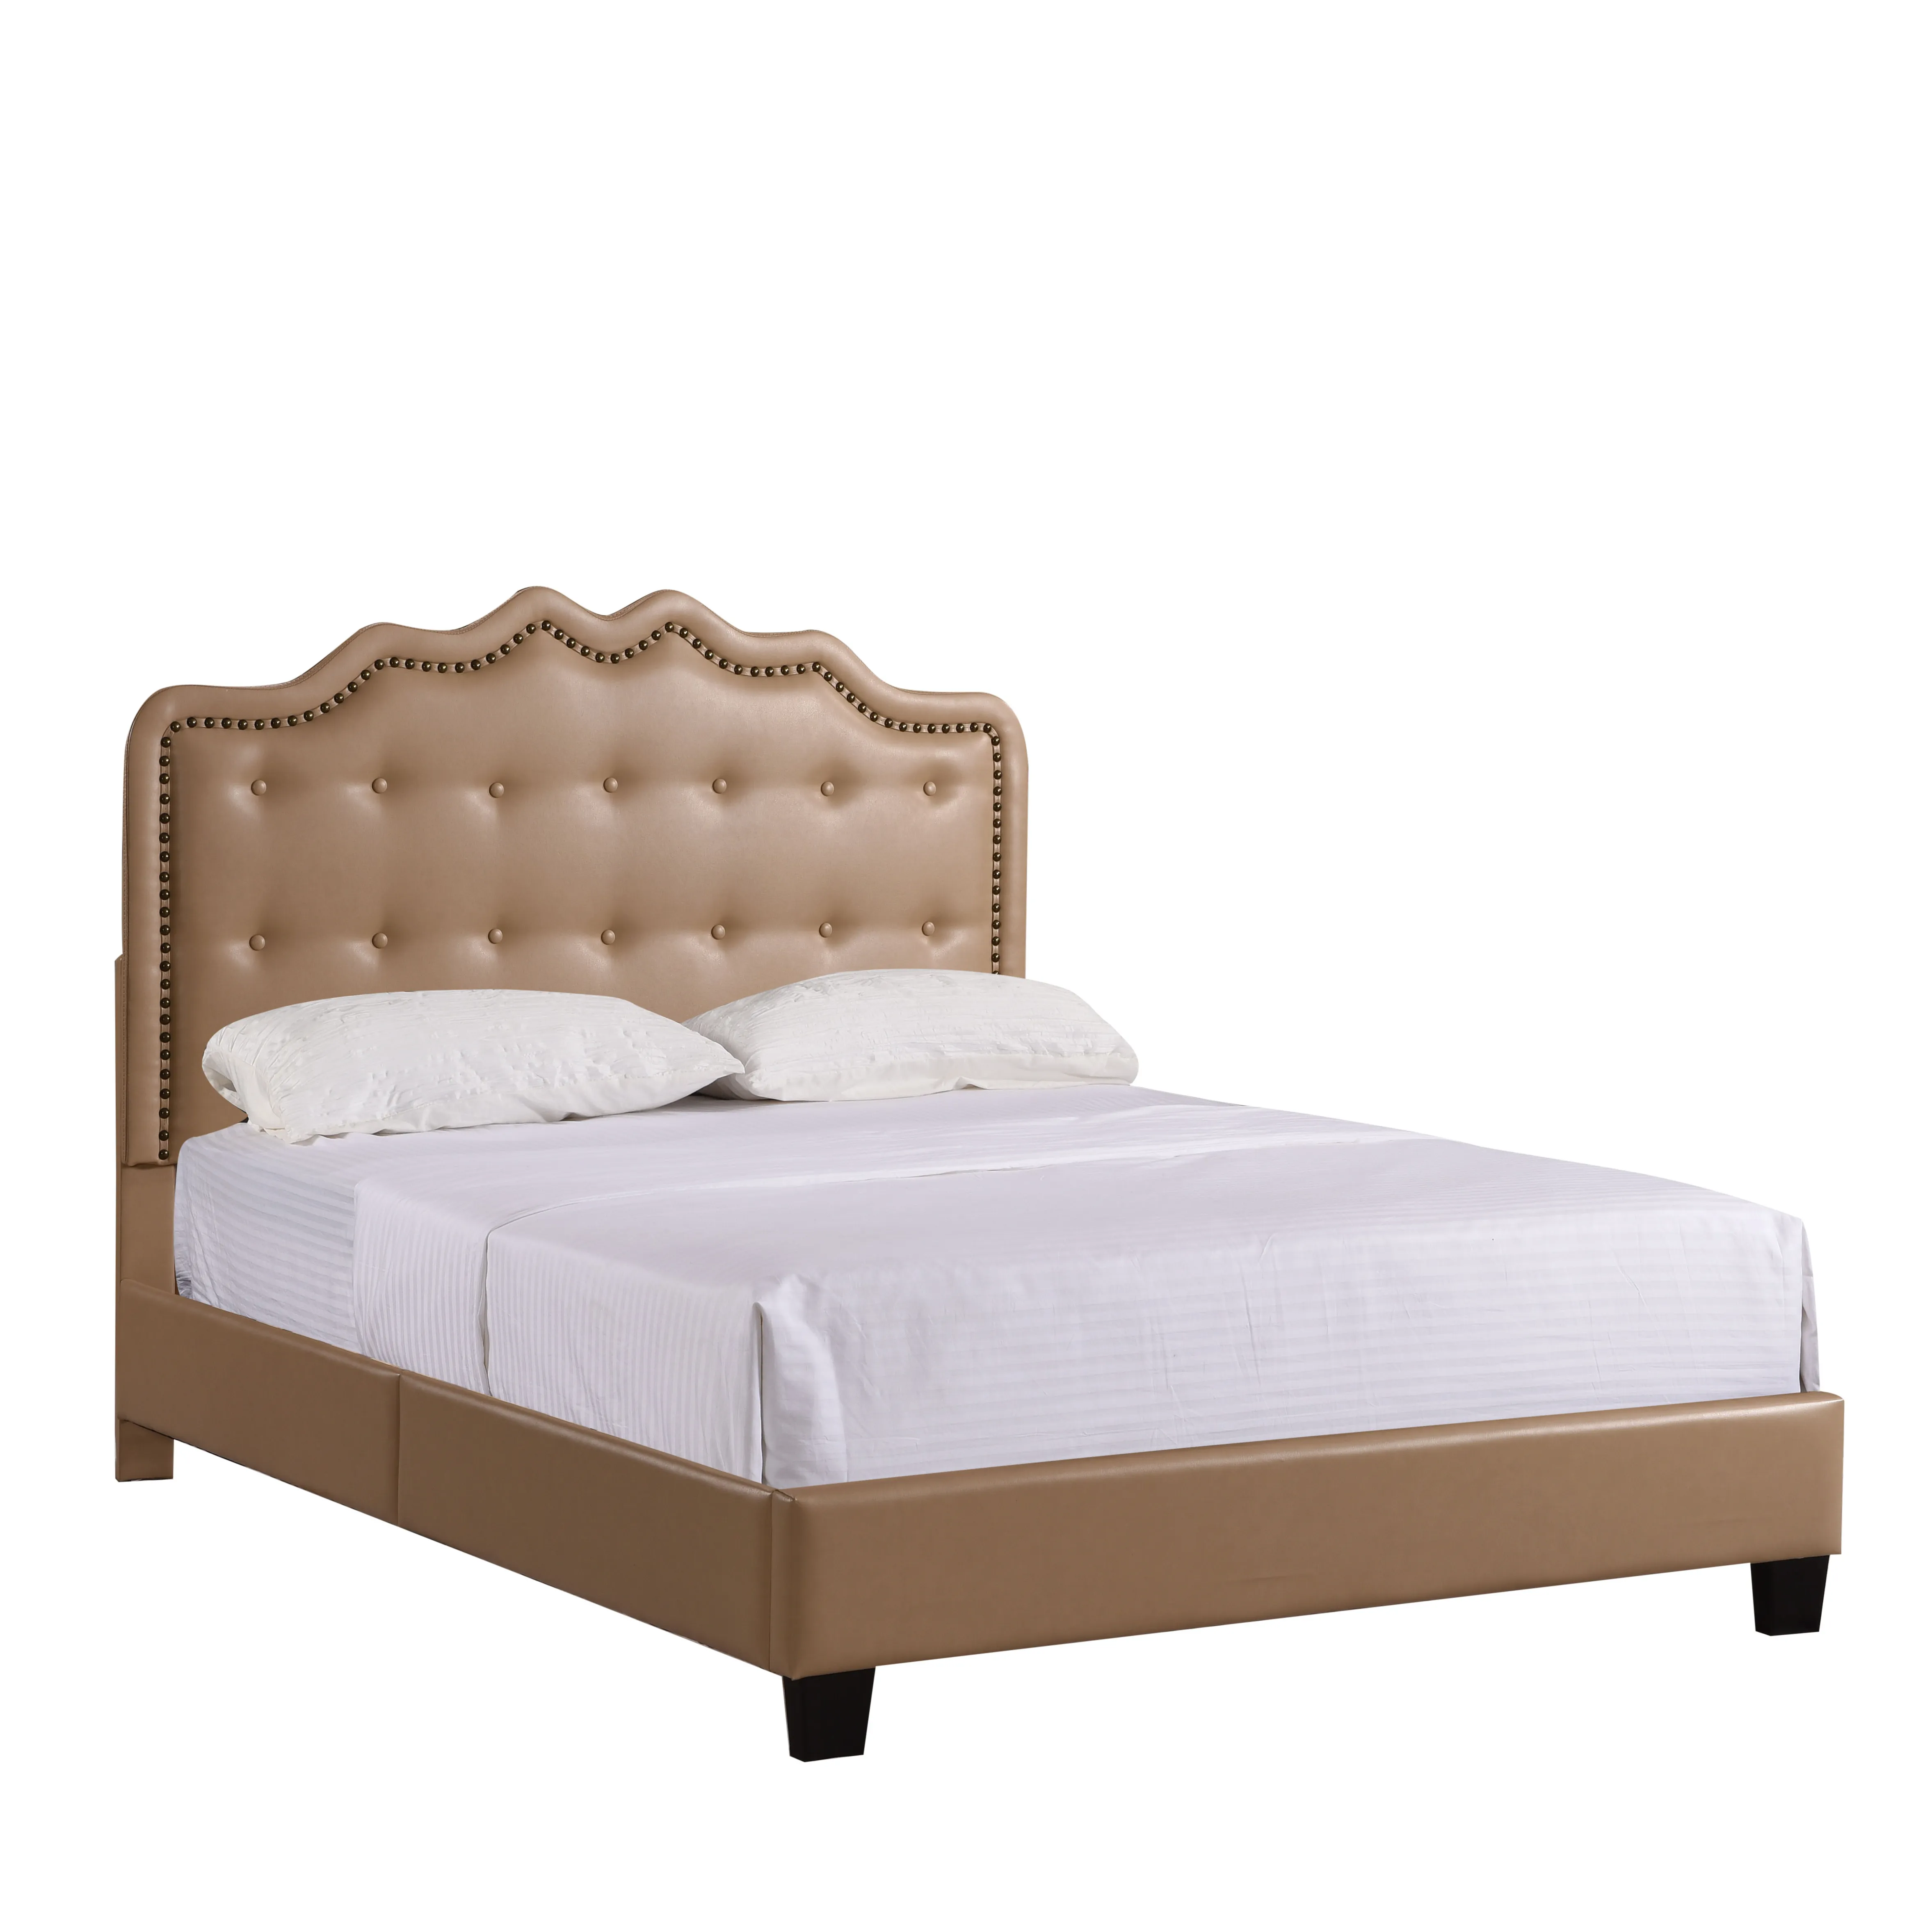 럭셔리 이탈리아 침실 세트 킹 사이즈 현대 최신 더블 침대 디자인 가구 가죽 침대